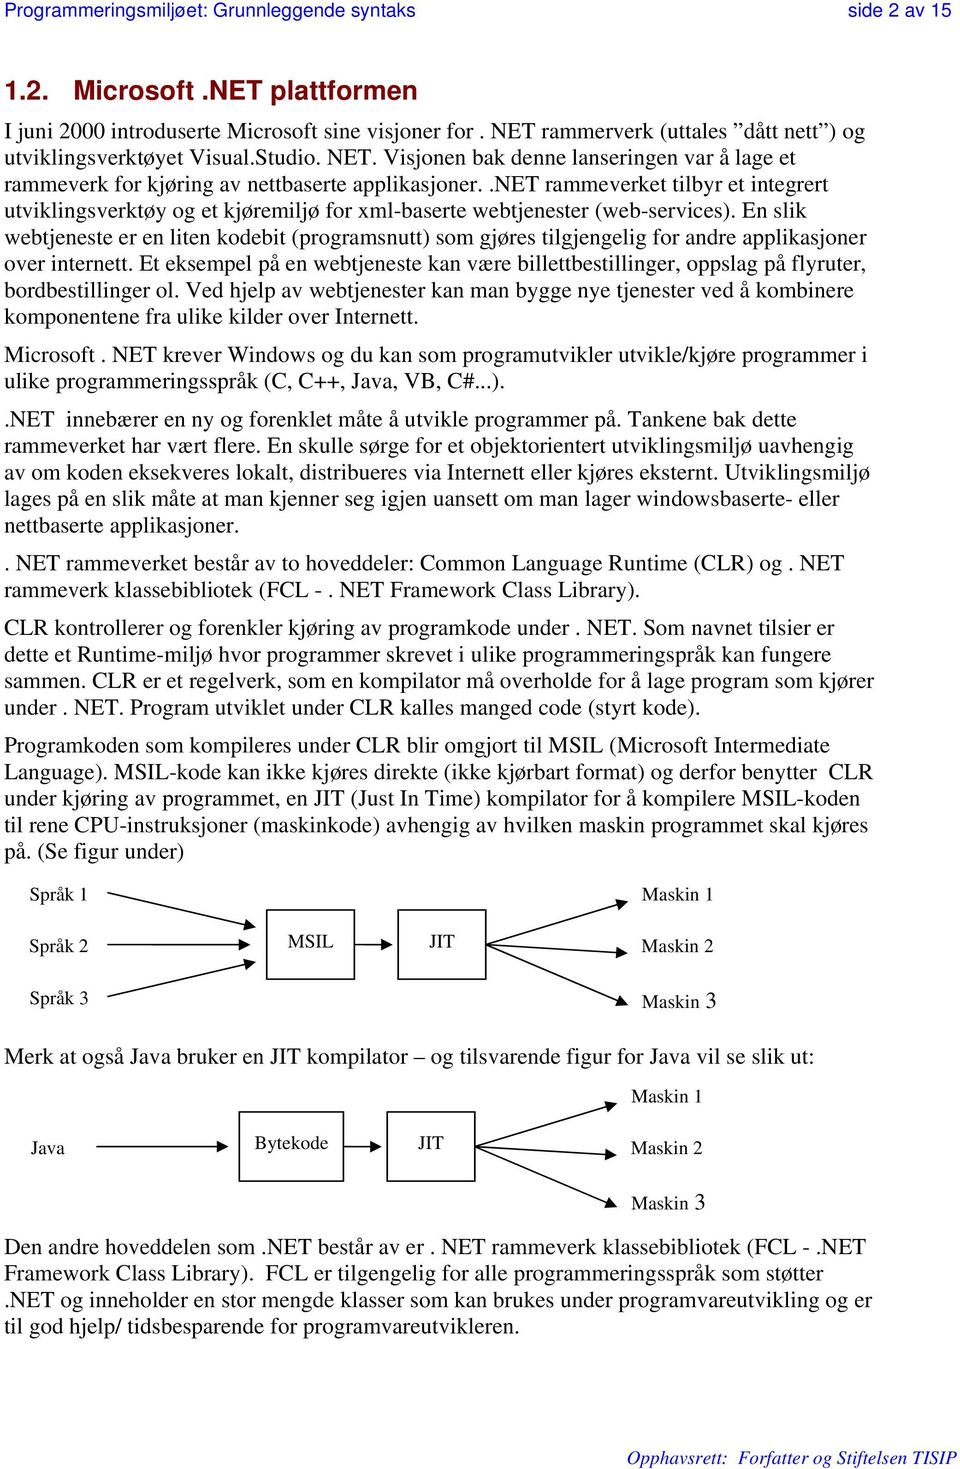 .net rammeverket tilbyr et integrert utviklingsverktøy og et kjøremiljø for xml-baserte webtjenester (web-services).